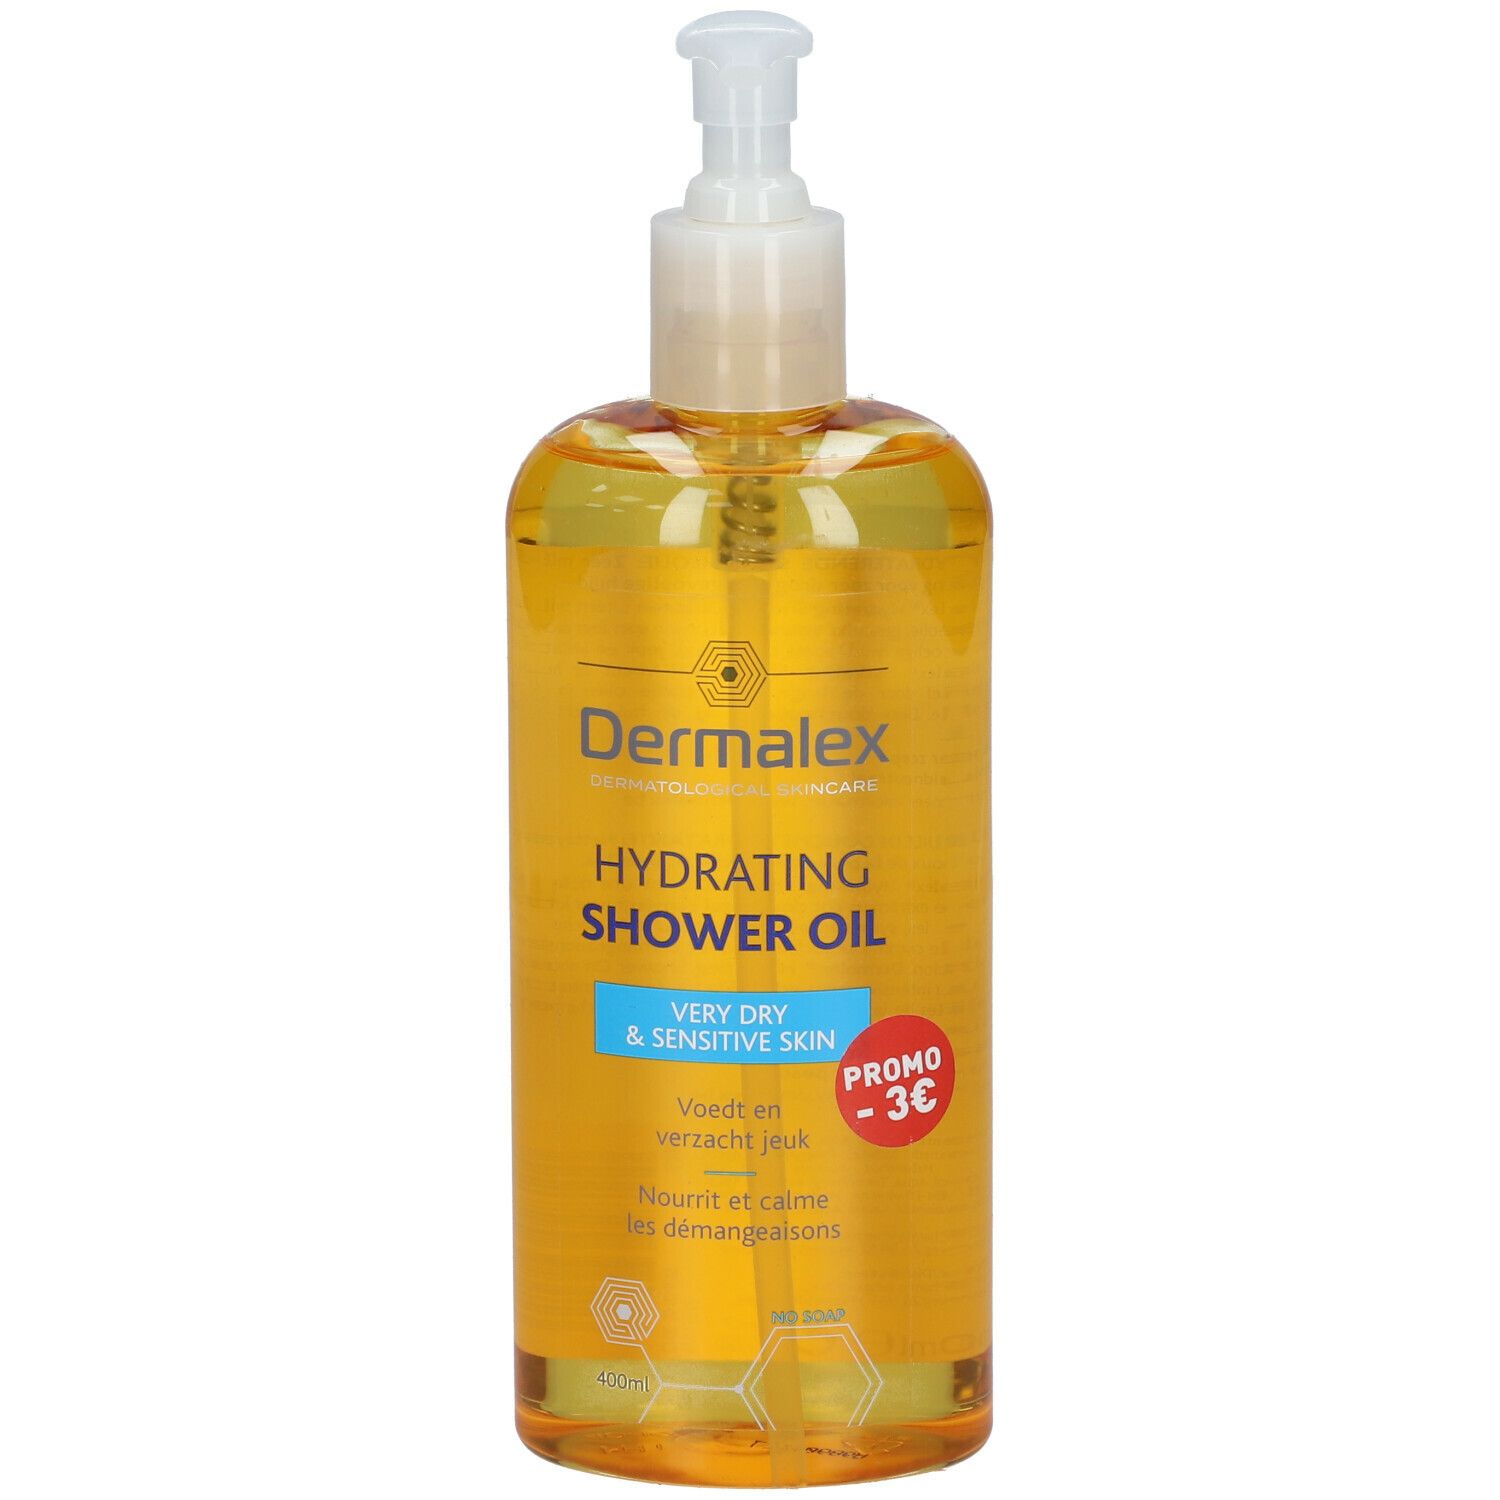 Dermalex Hydrating Shower Oil Peaux Sèches & Sensibles